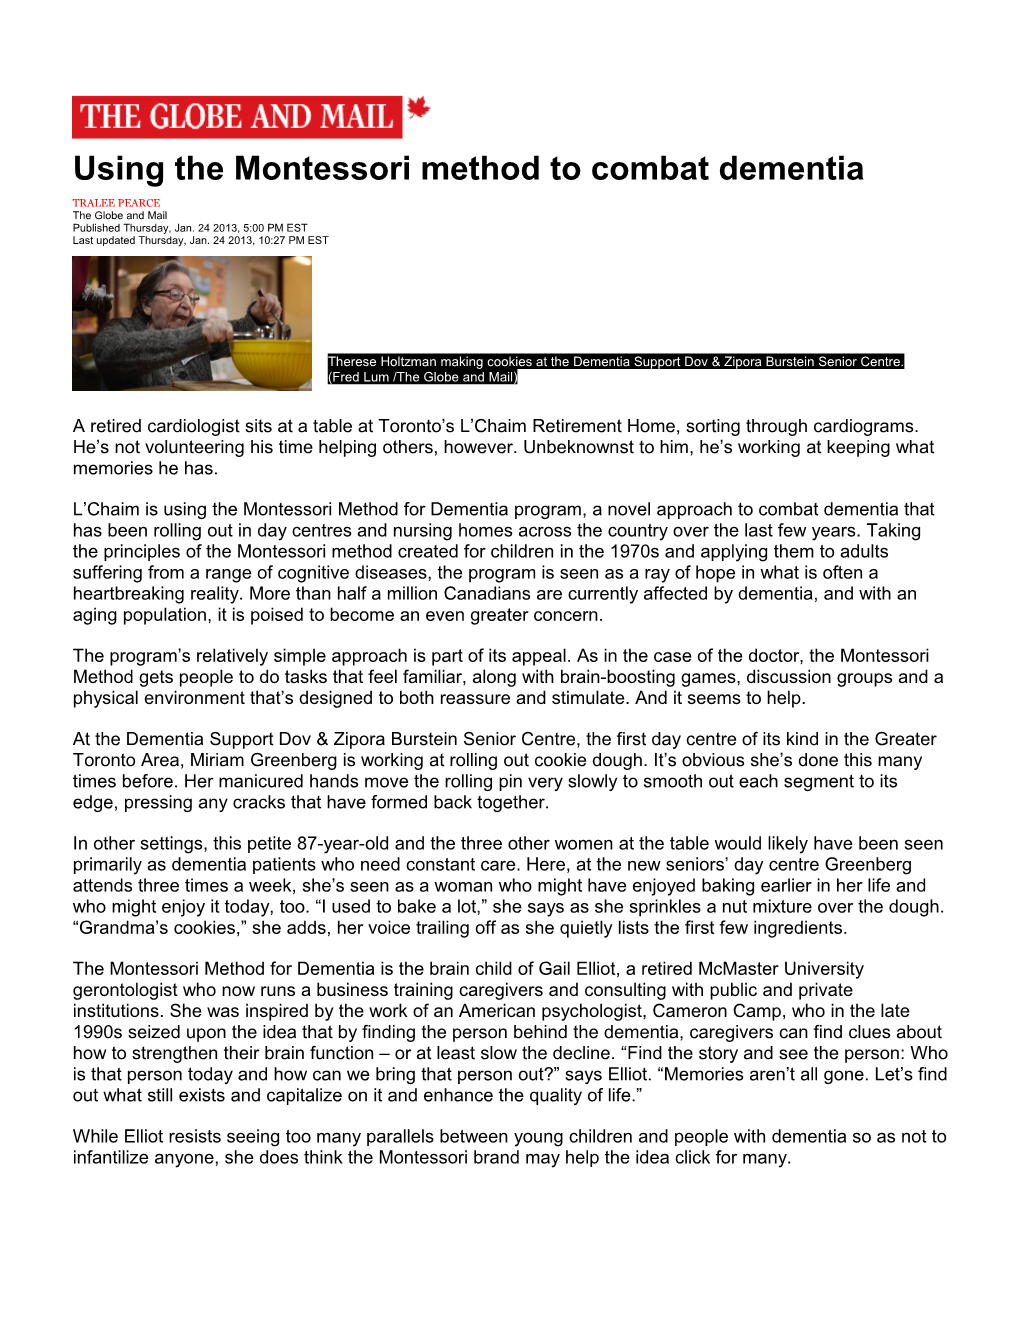 Using the Montessori Method to Combat Dementia